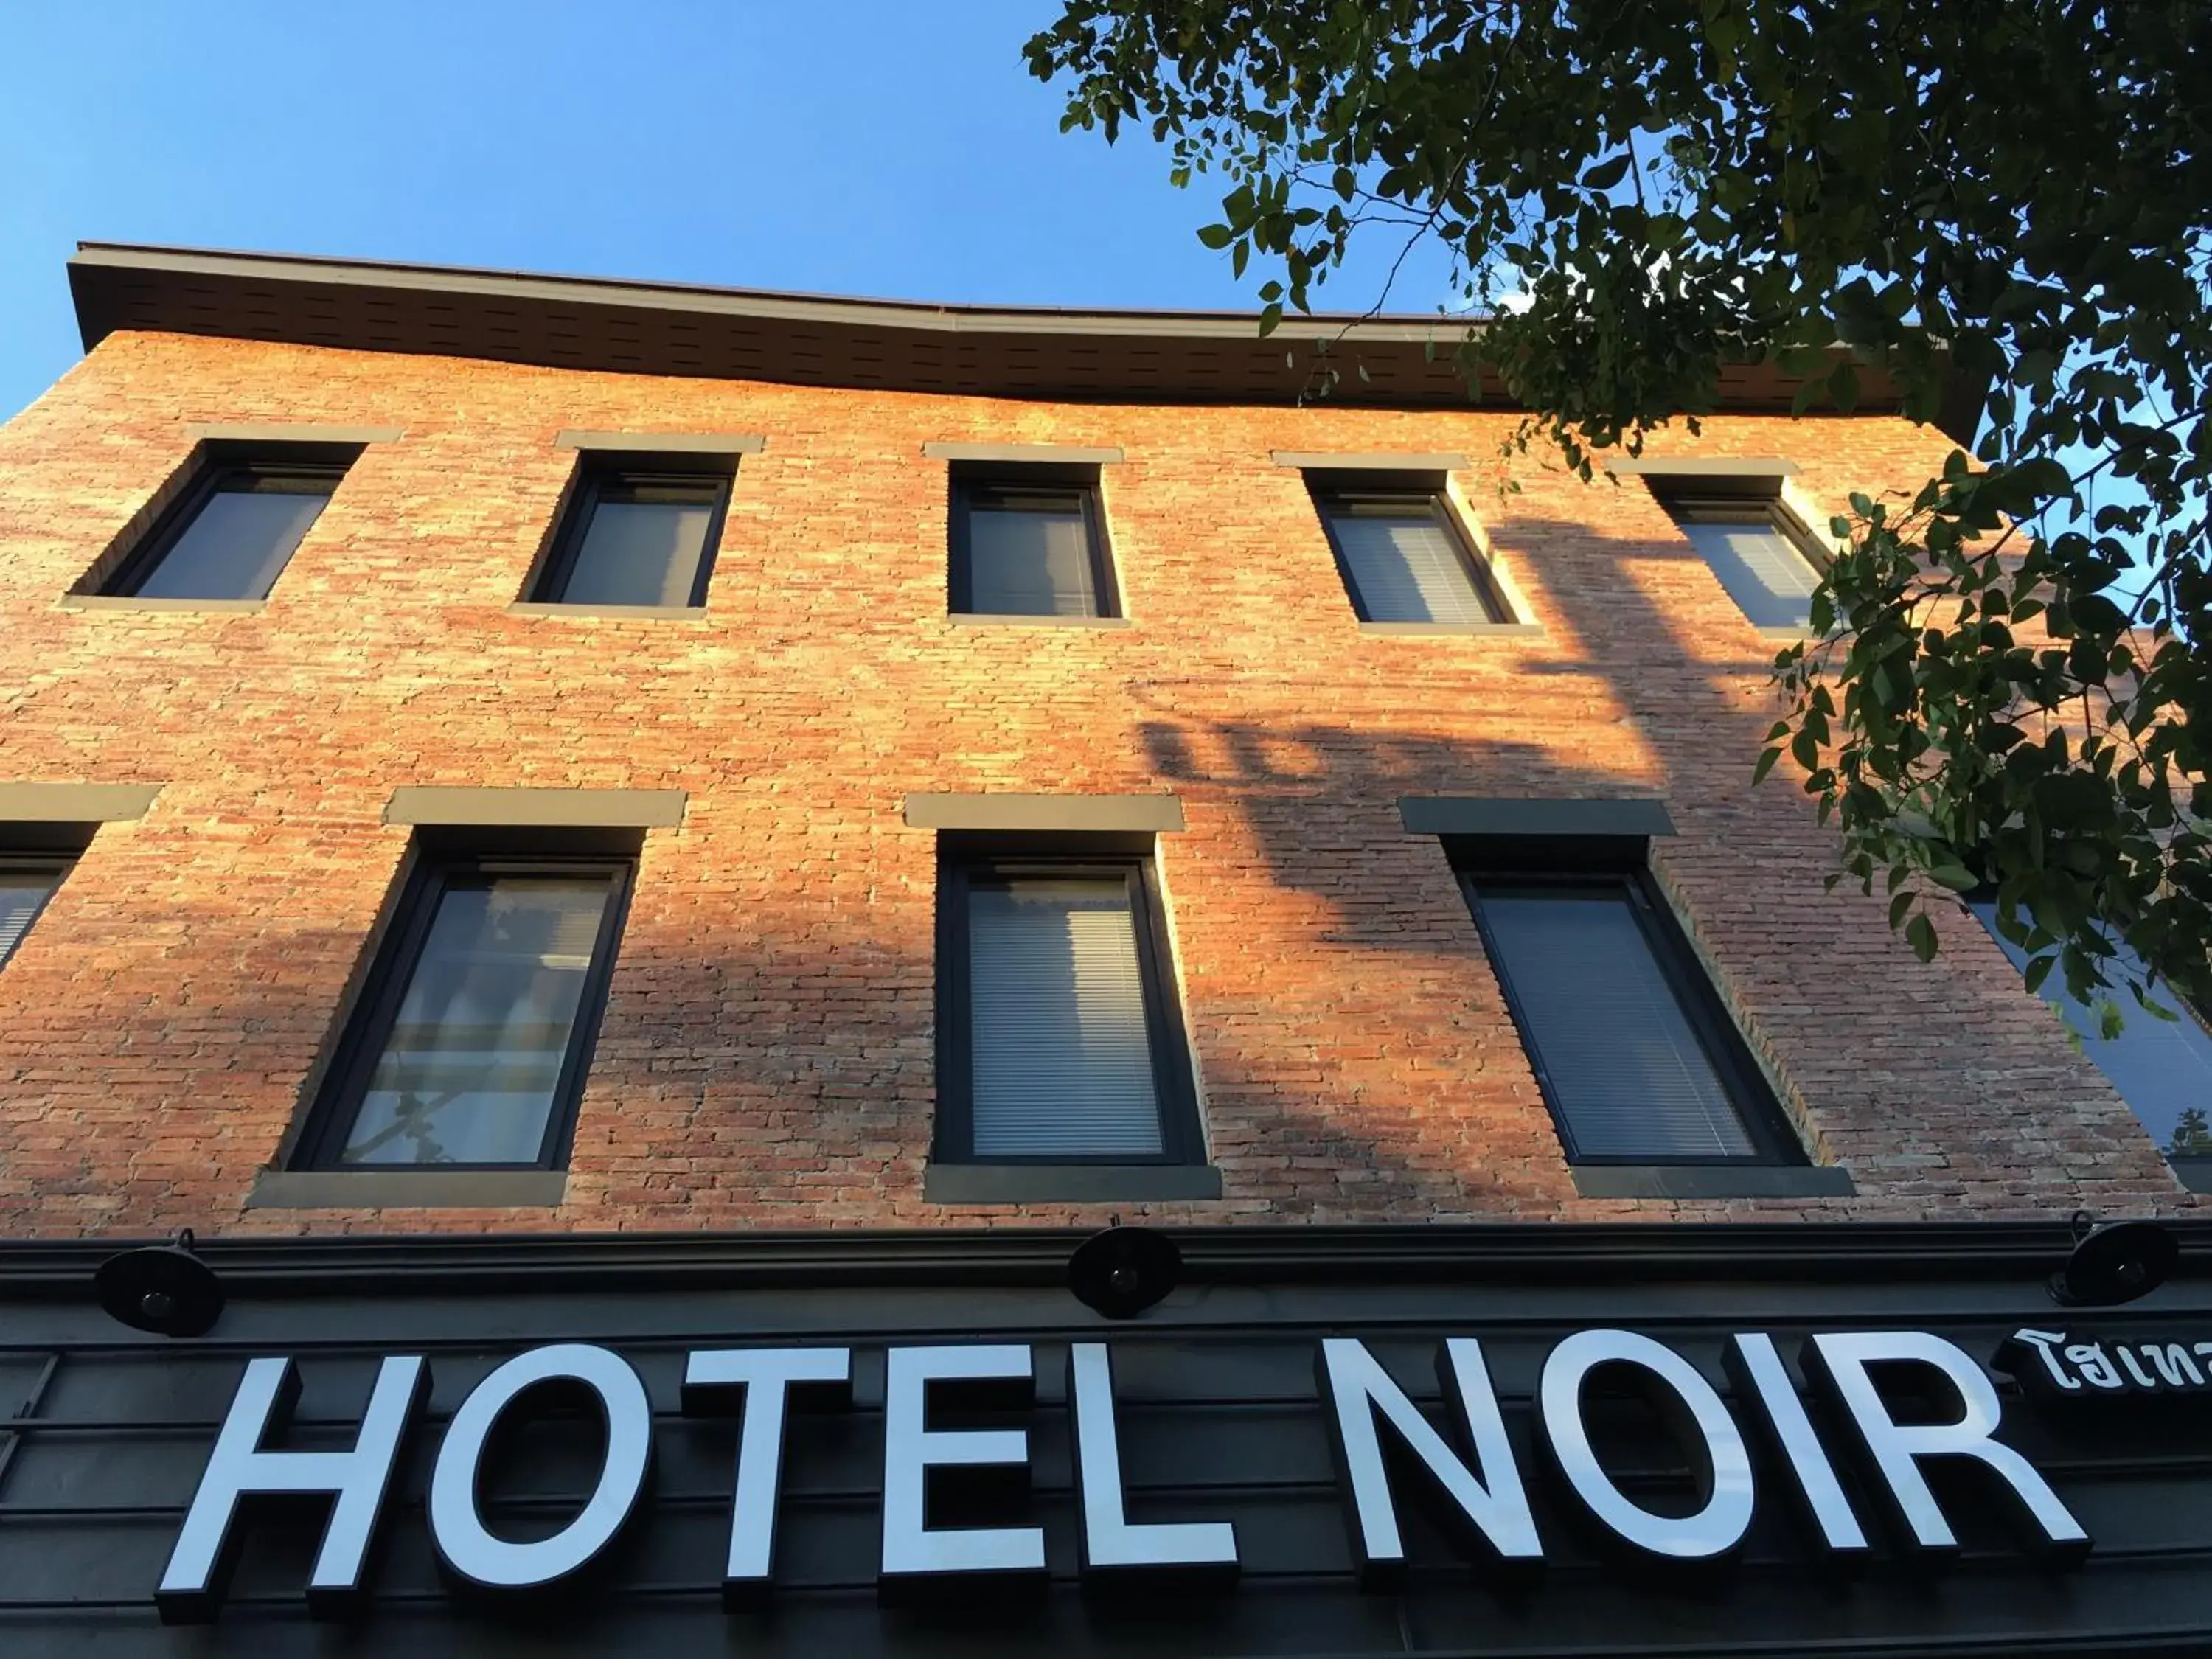 Facade/entrance in Hotel Noir